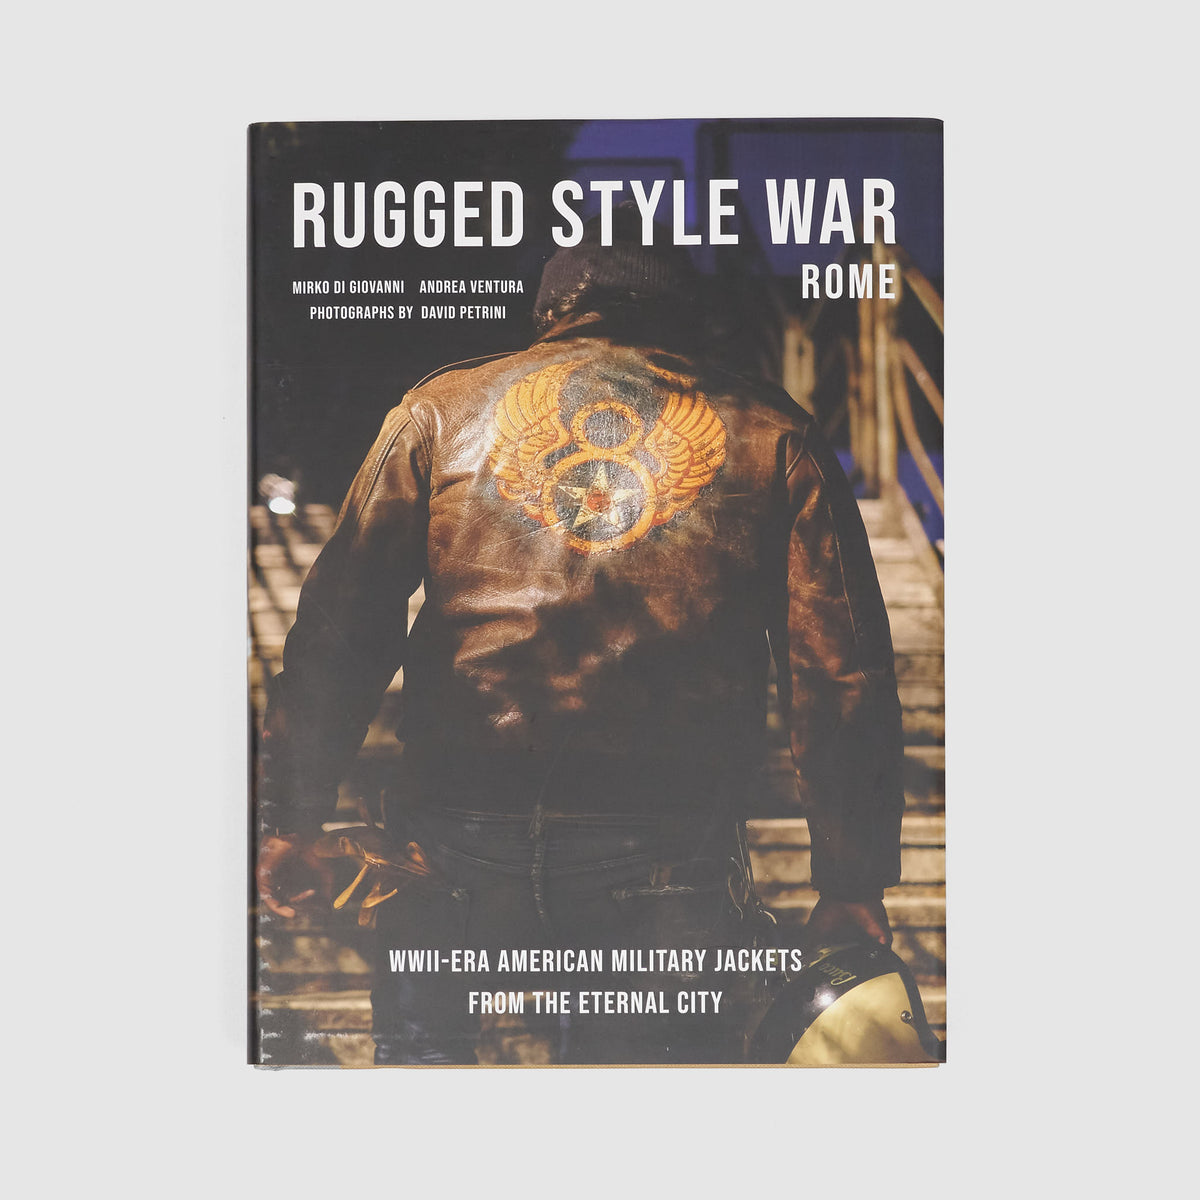 Rugged Style War – Rome, Andrea Ventura and Mirko Di Giovanni